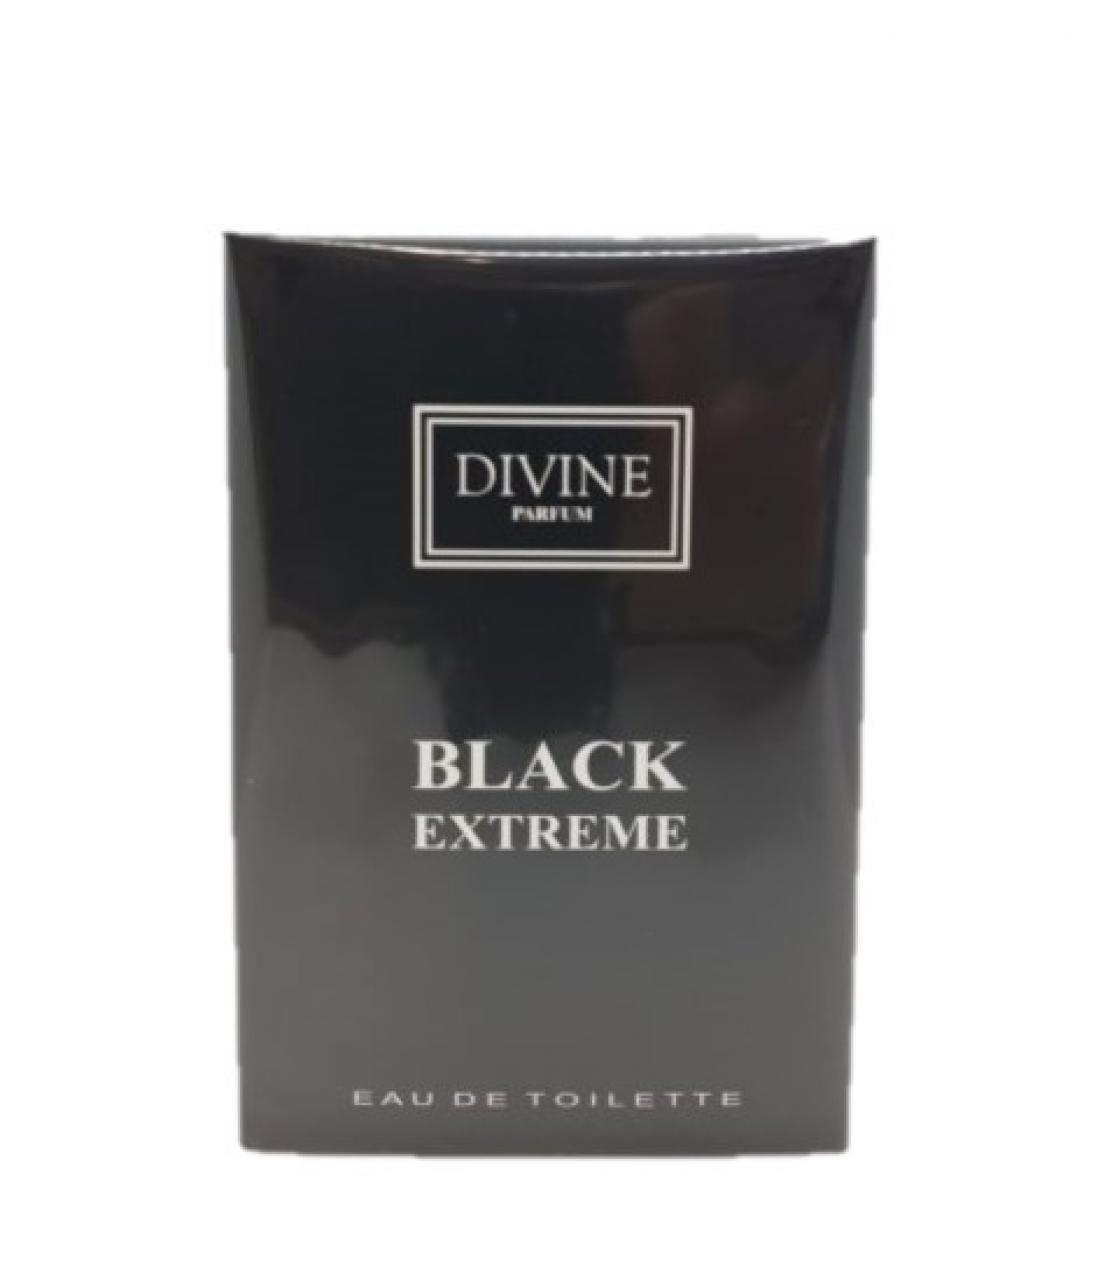 DIVINE PARFUM – BLACK EXTREME